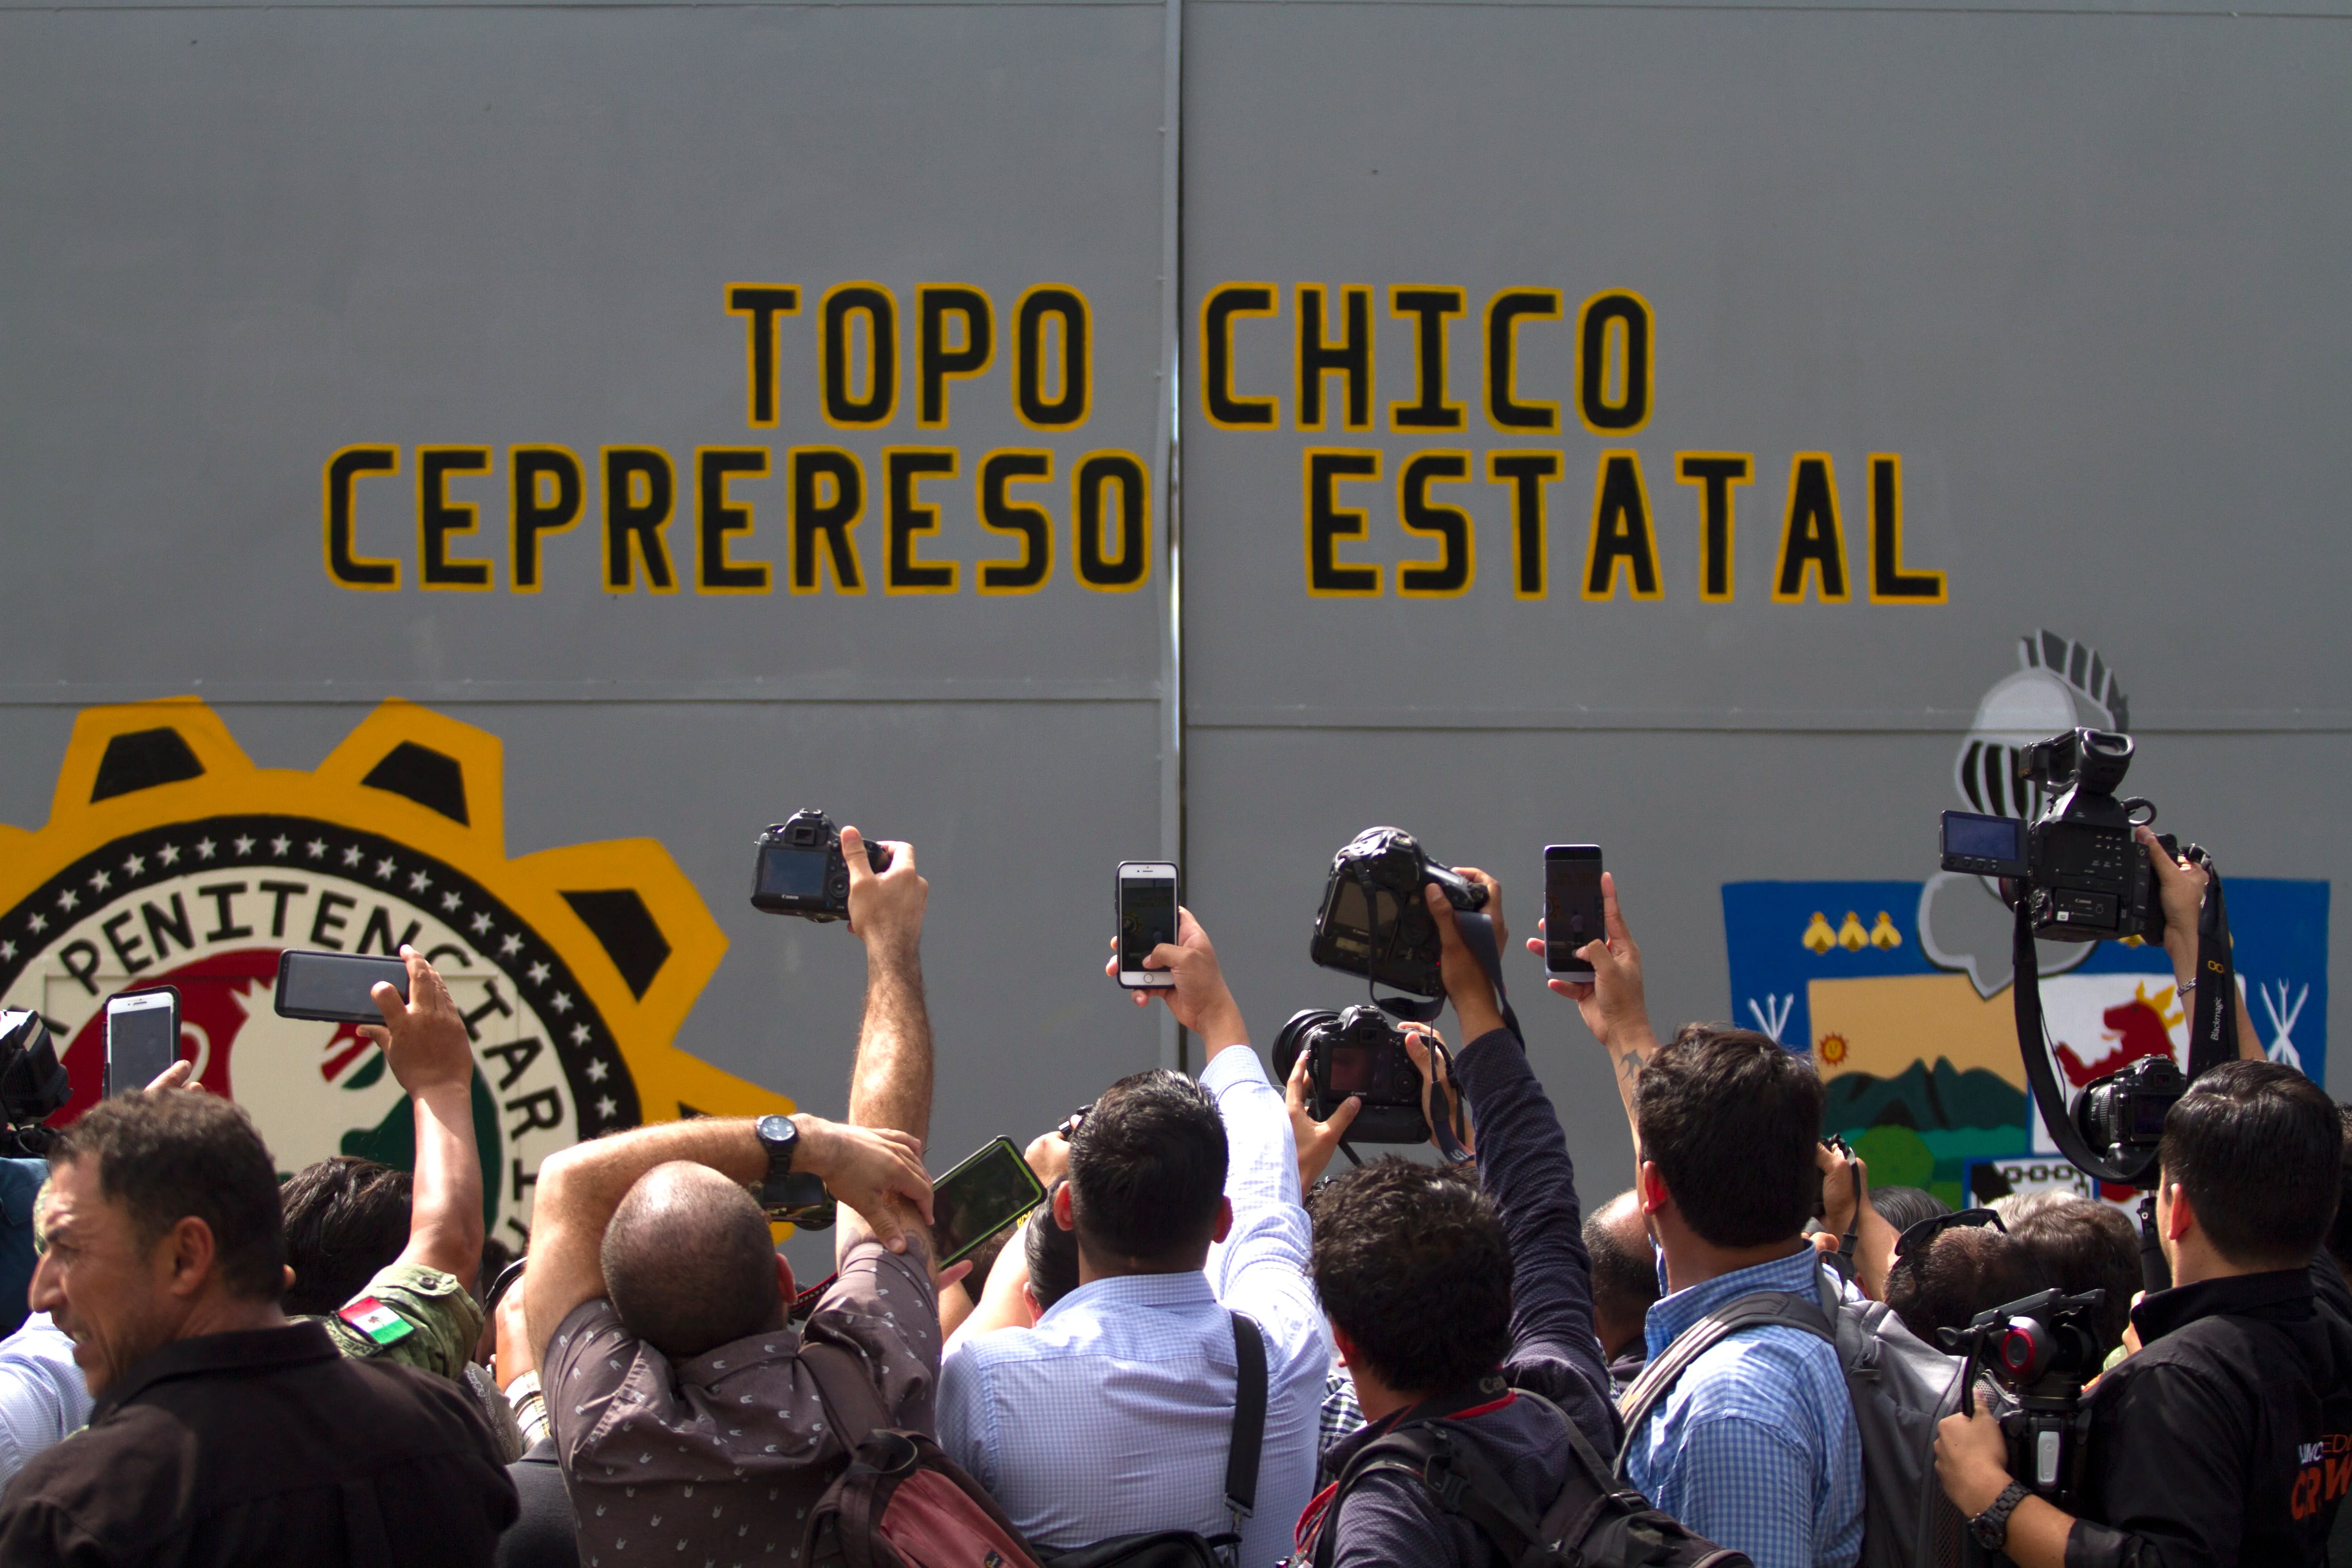 El lunes 30 de septiembre, el penal de Topo Chico cerró sus puertas para siempre (Foto: Cuartoscuro)